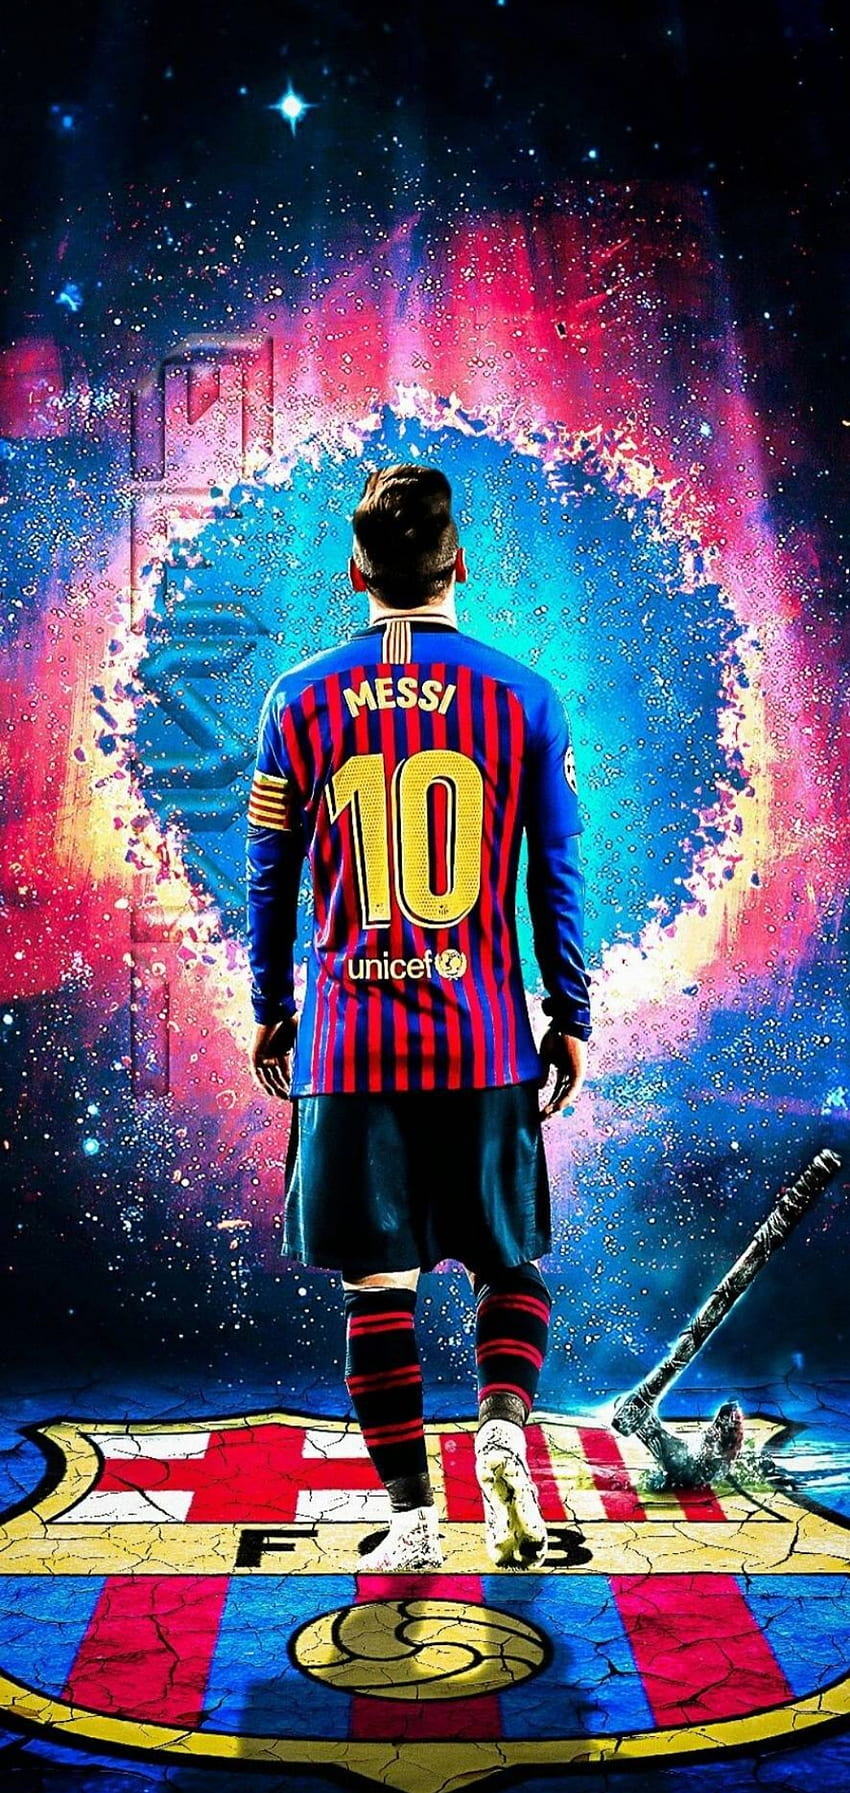 Messi art book HD wallpaper là một ảnh nền tuyệt đẹp, tràn đầy màu sắc và sáng tạo. Với những họa tiết tuyệt vời, bức tranh sẽ làm bạn cảm thấy như đang ngắm một tác phẩm nghệ thuật đắt giá nhất.